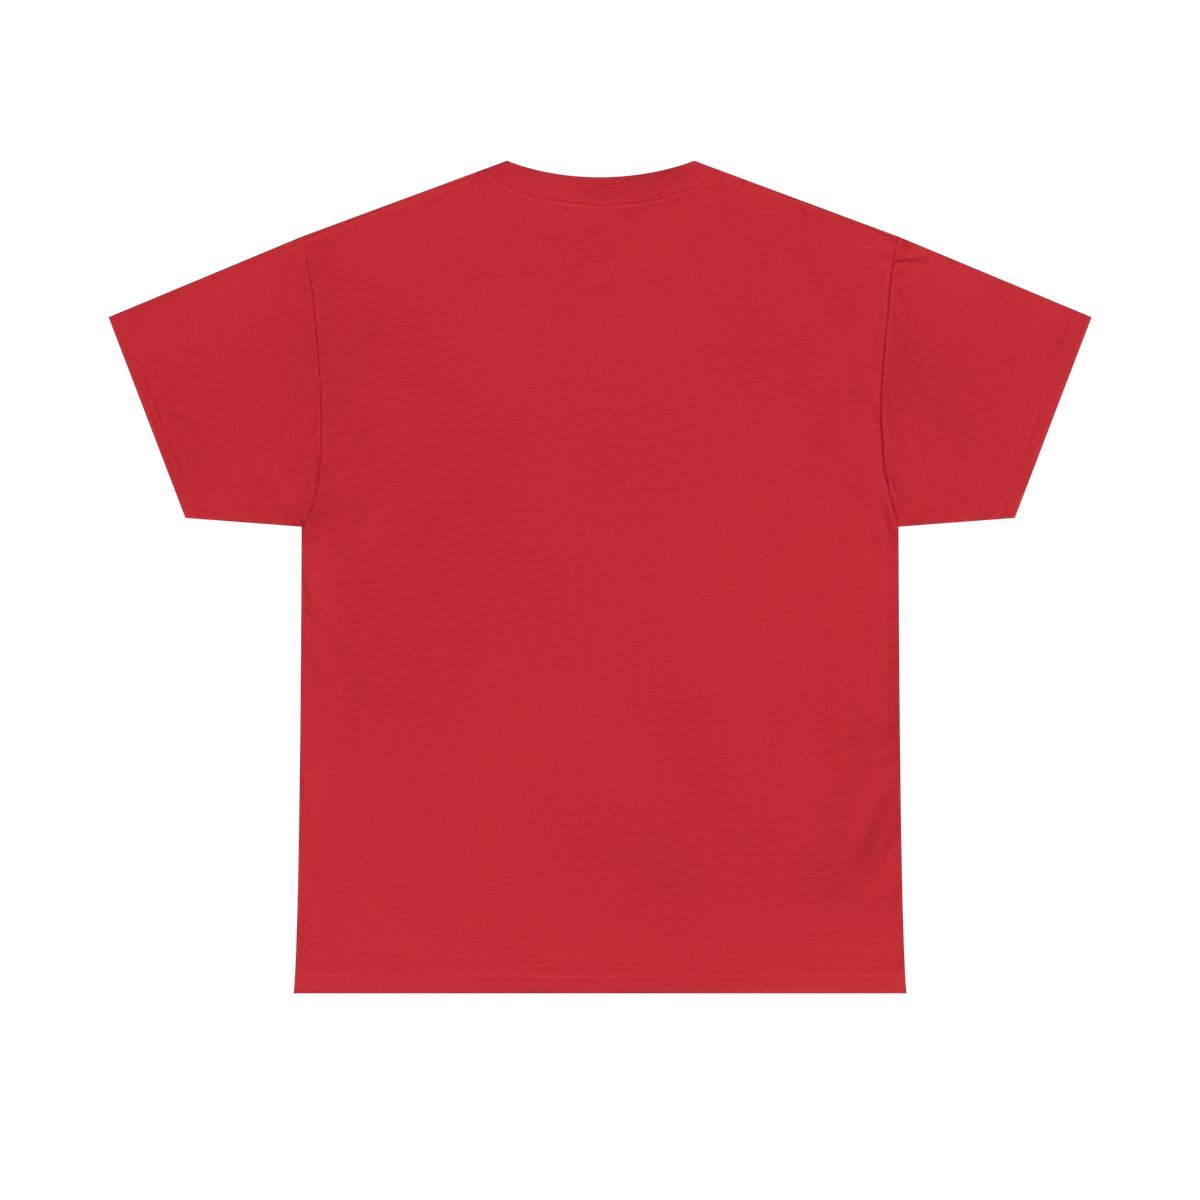 TheBlast.FM – Blender Short Sleeve T-Shirt